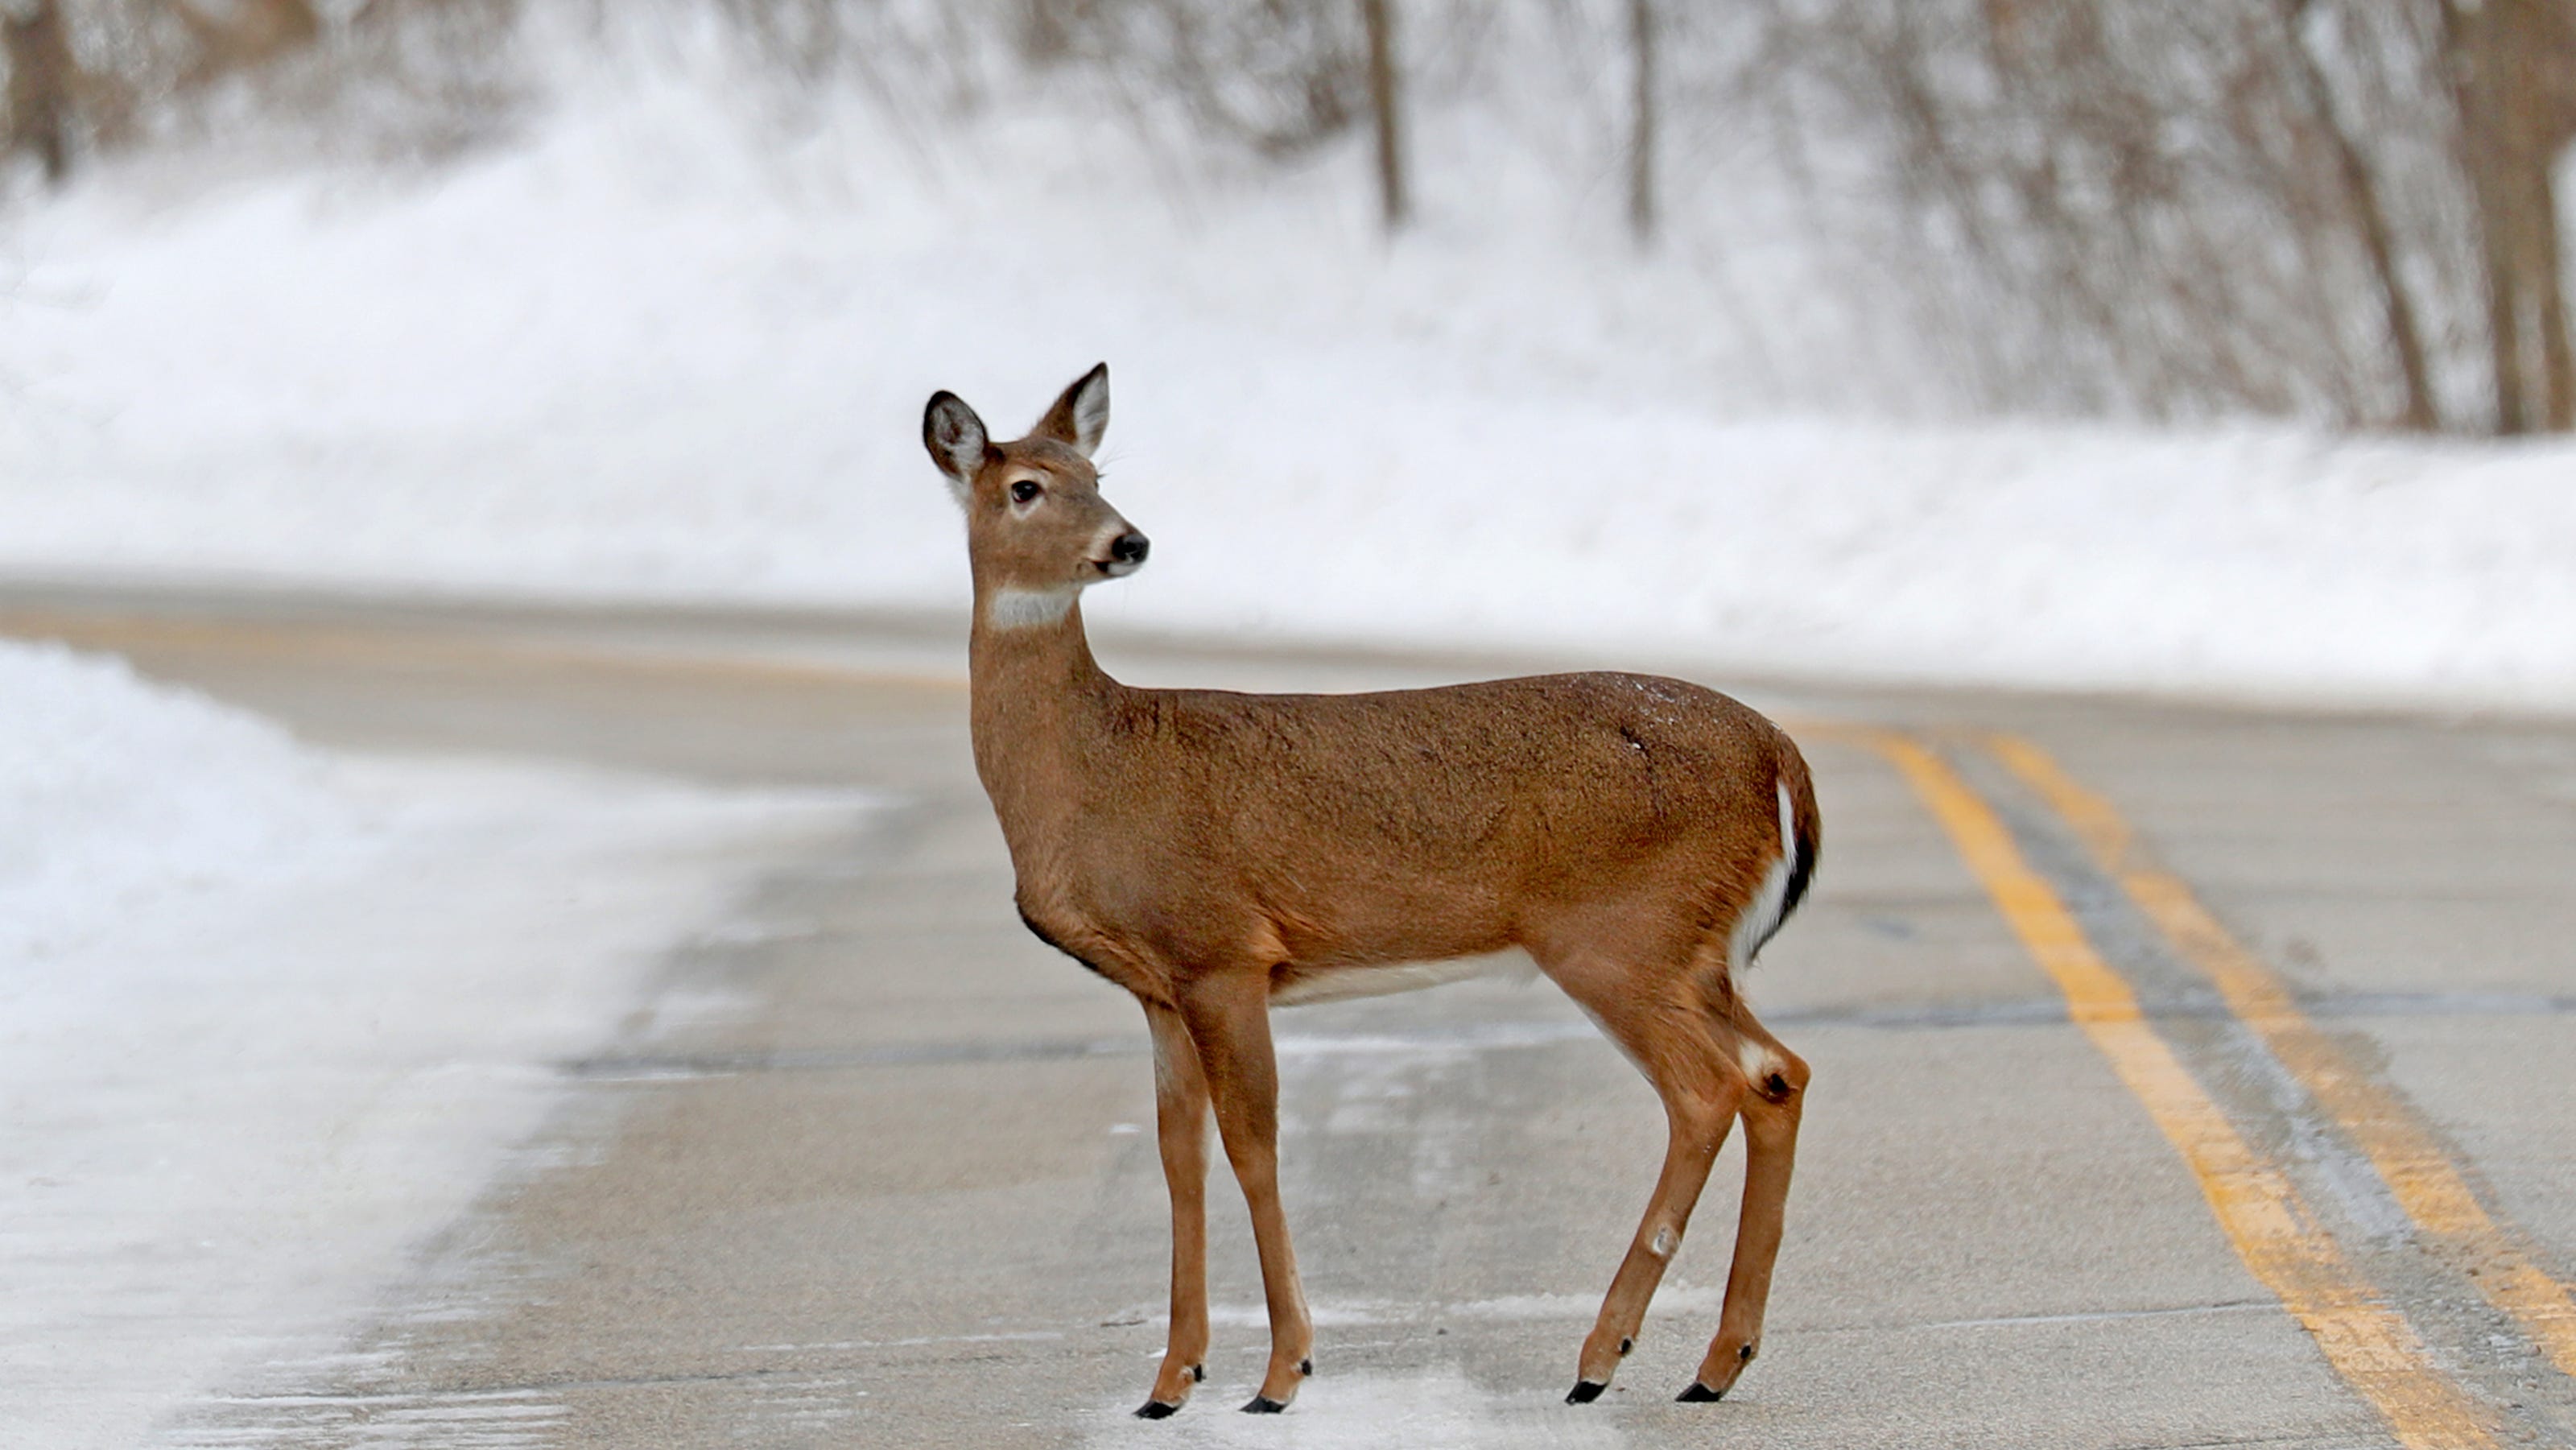 Deer crossing a snowy road in a winter landscape